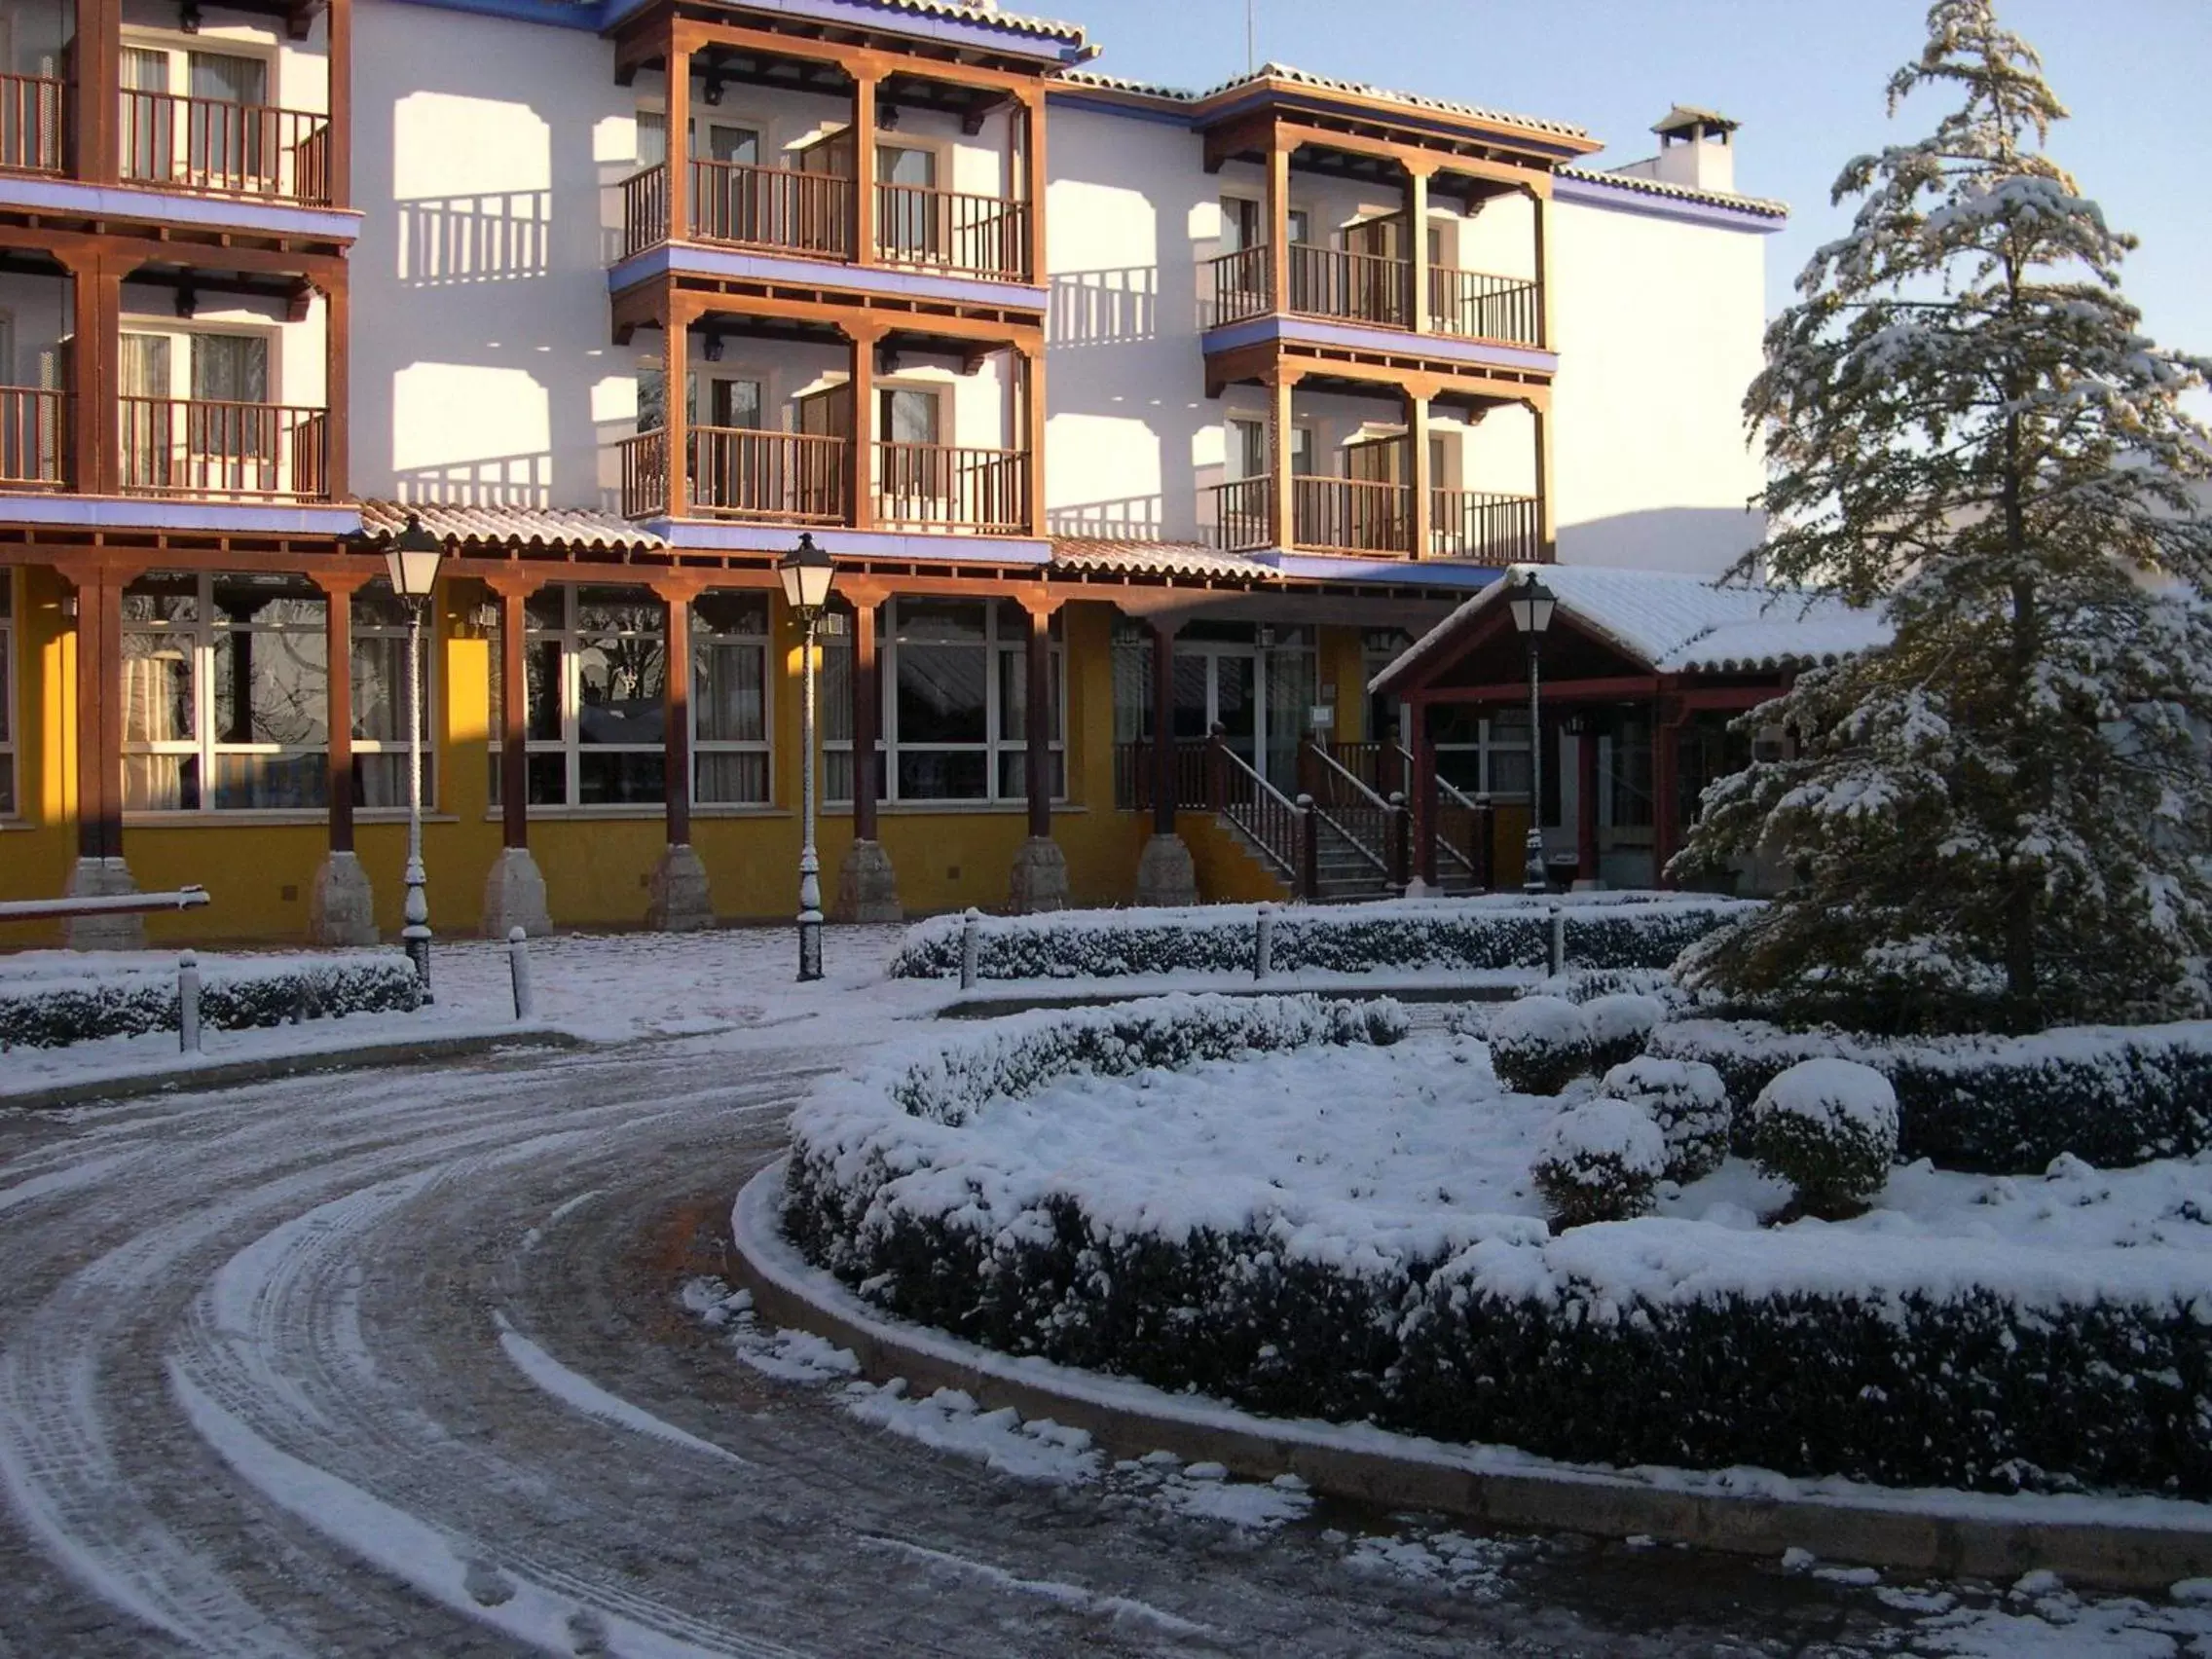 Facade/entrance, Property Building in Parador de Manzanares